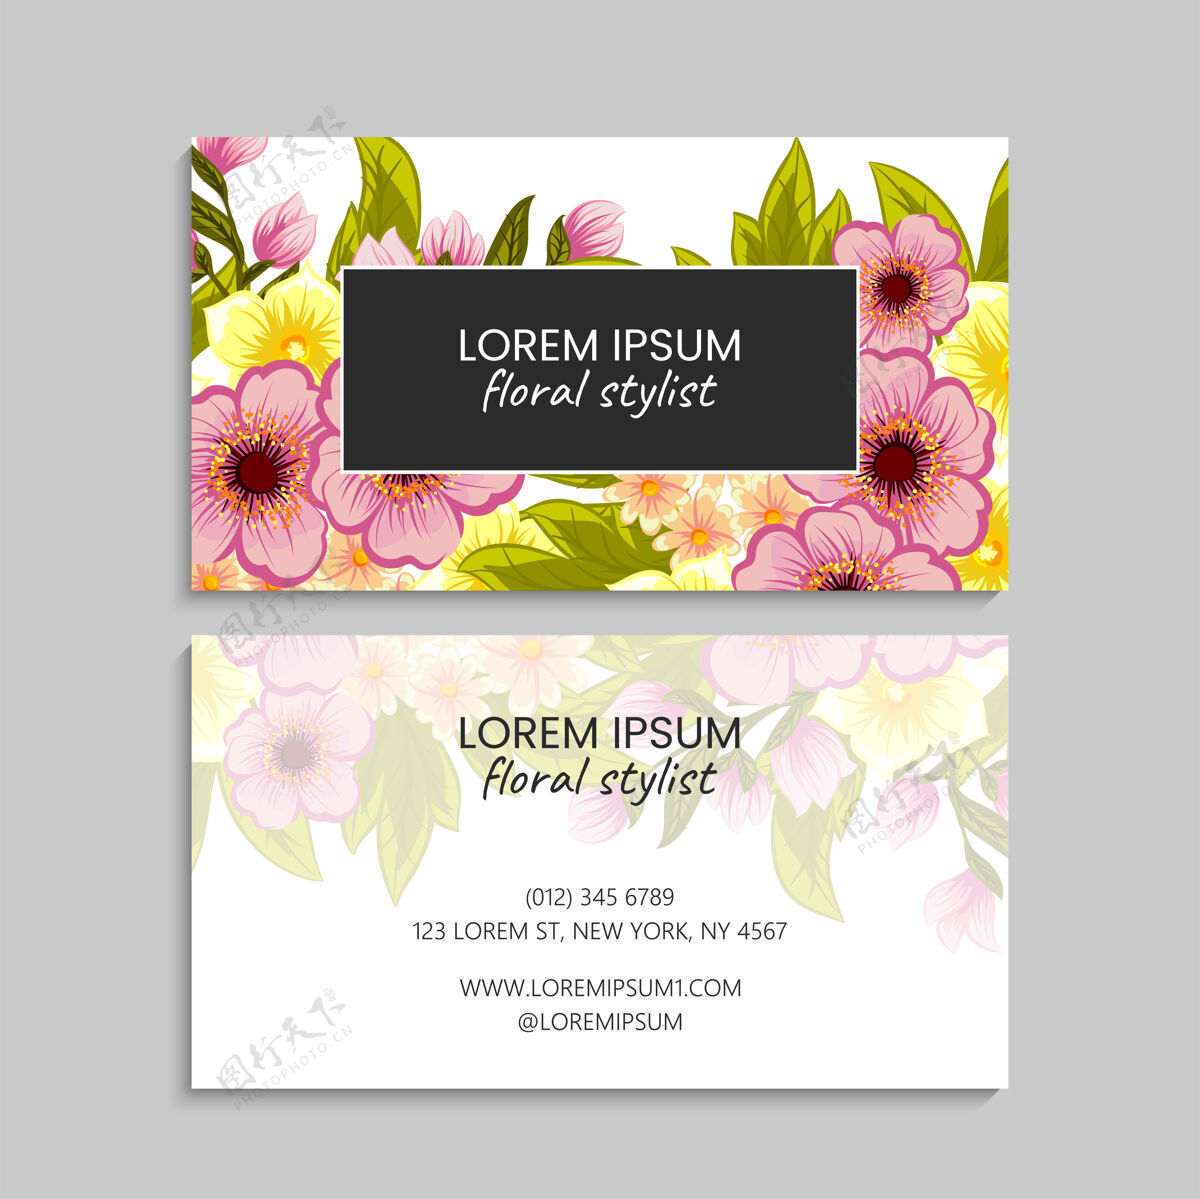 边框带粉色花朵的抽象名片模板空白长方形花